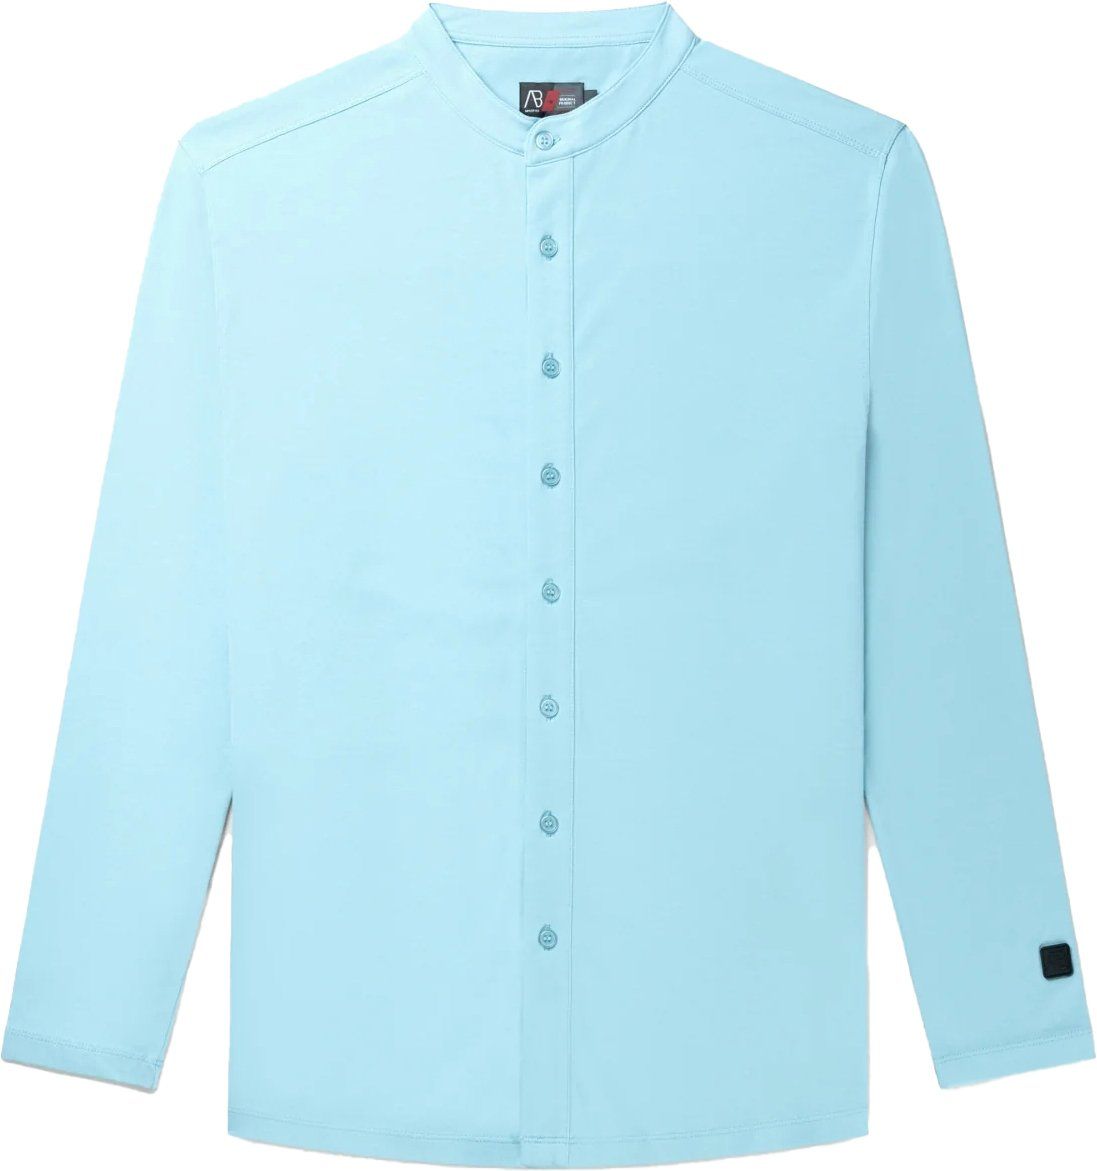 AB Lifestyle Button Up Overhemd Heren Lichtblauw Blauw